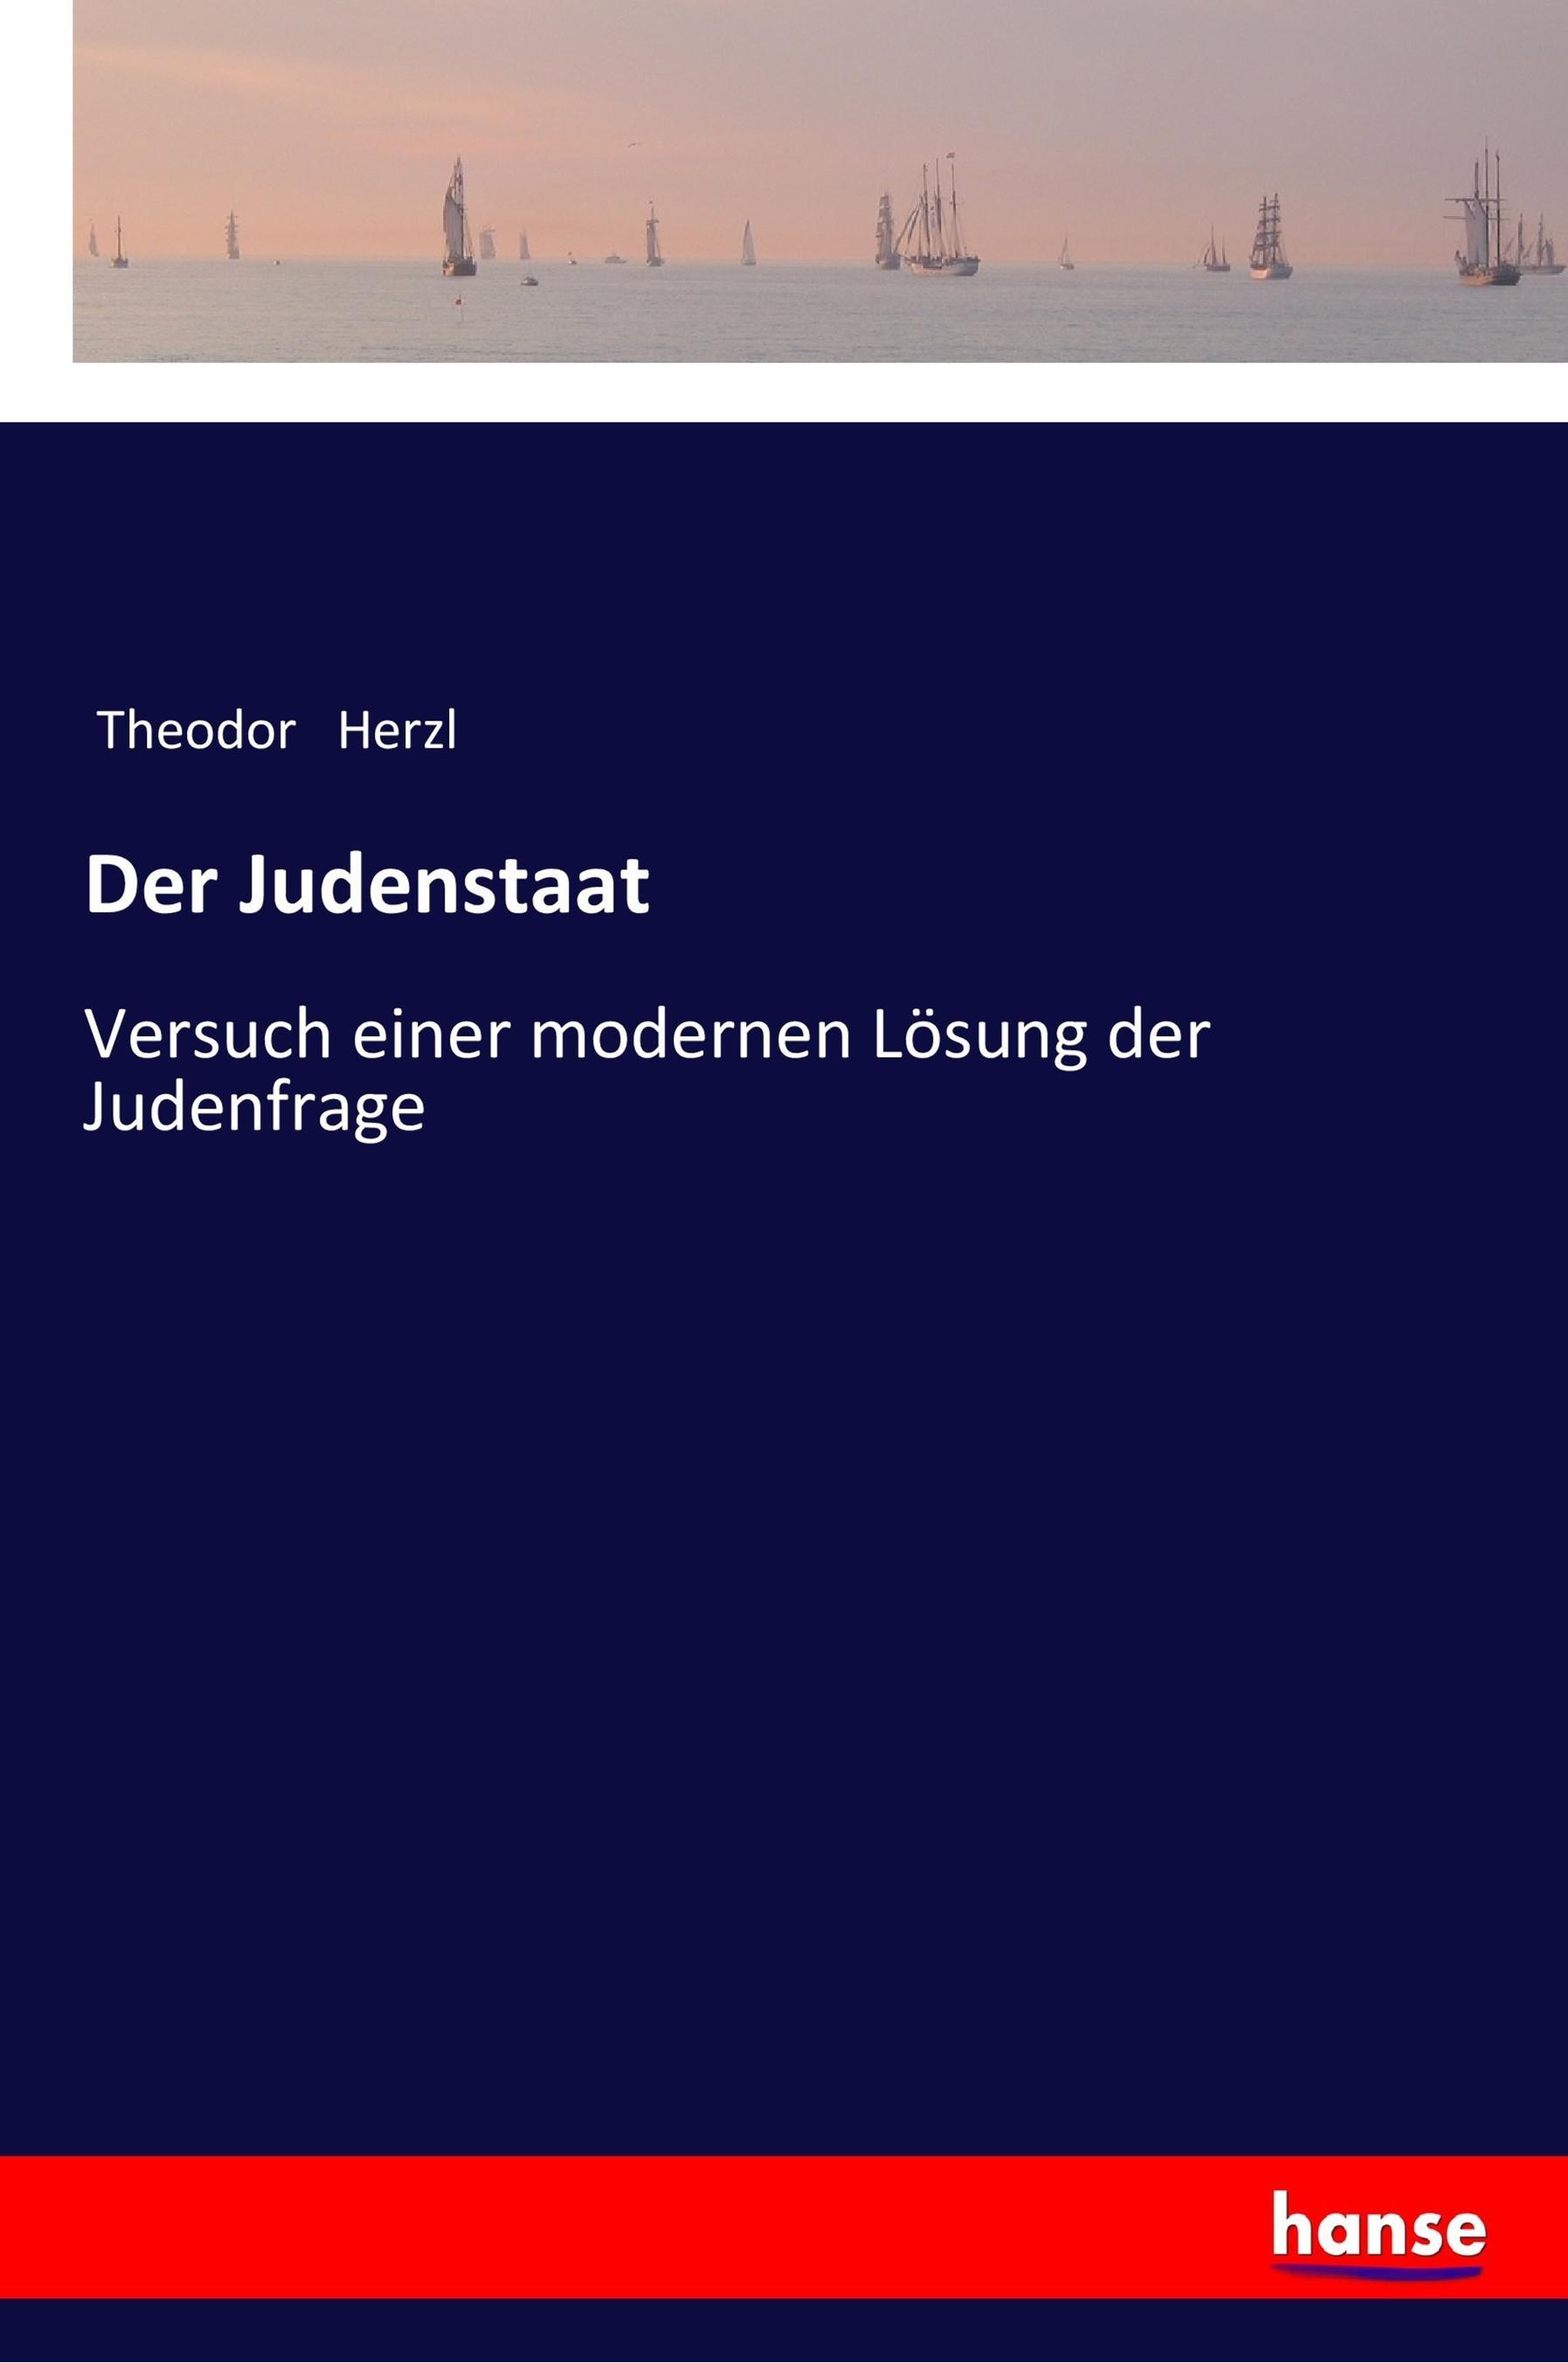 Der Judenstaat - Herzl, Theodor